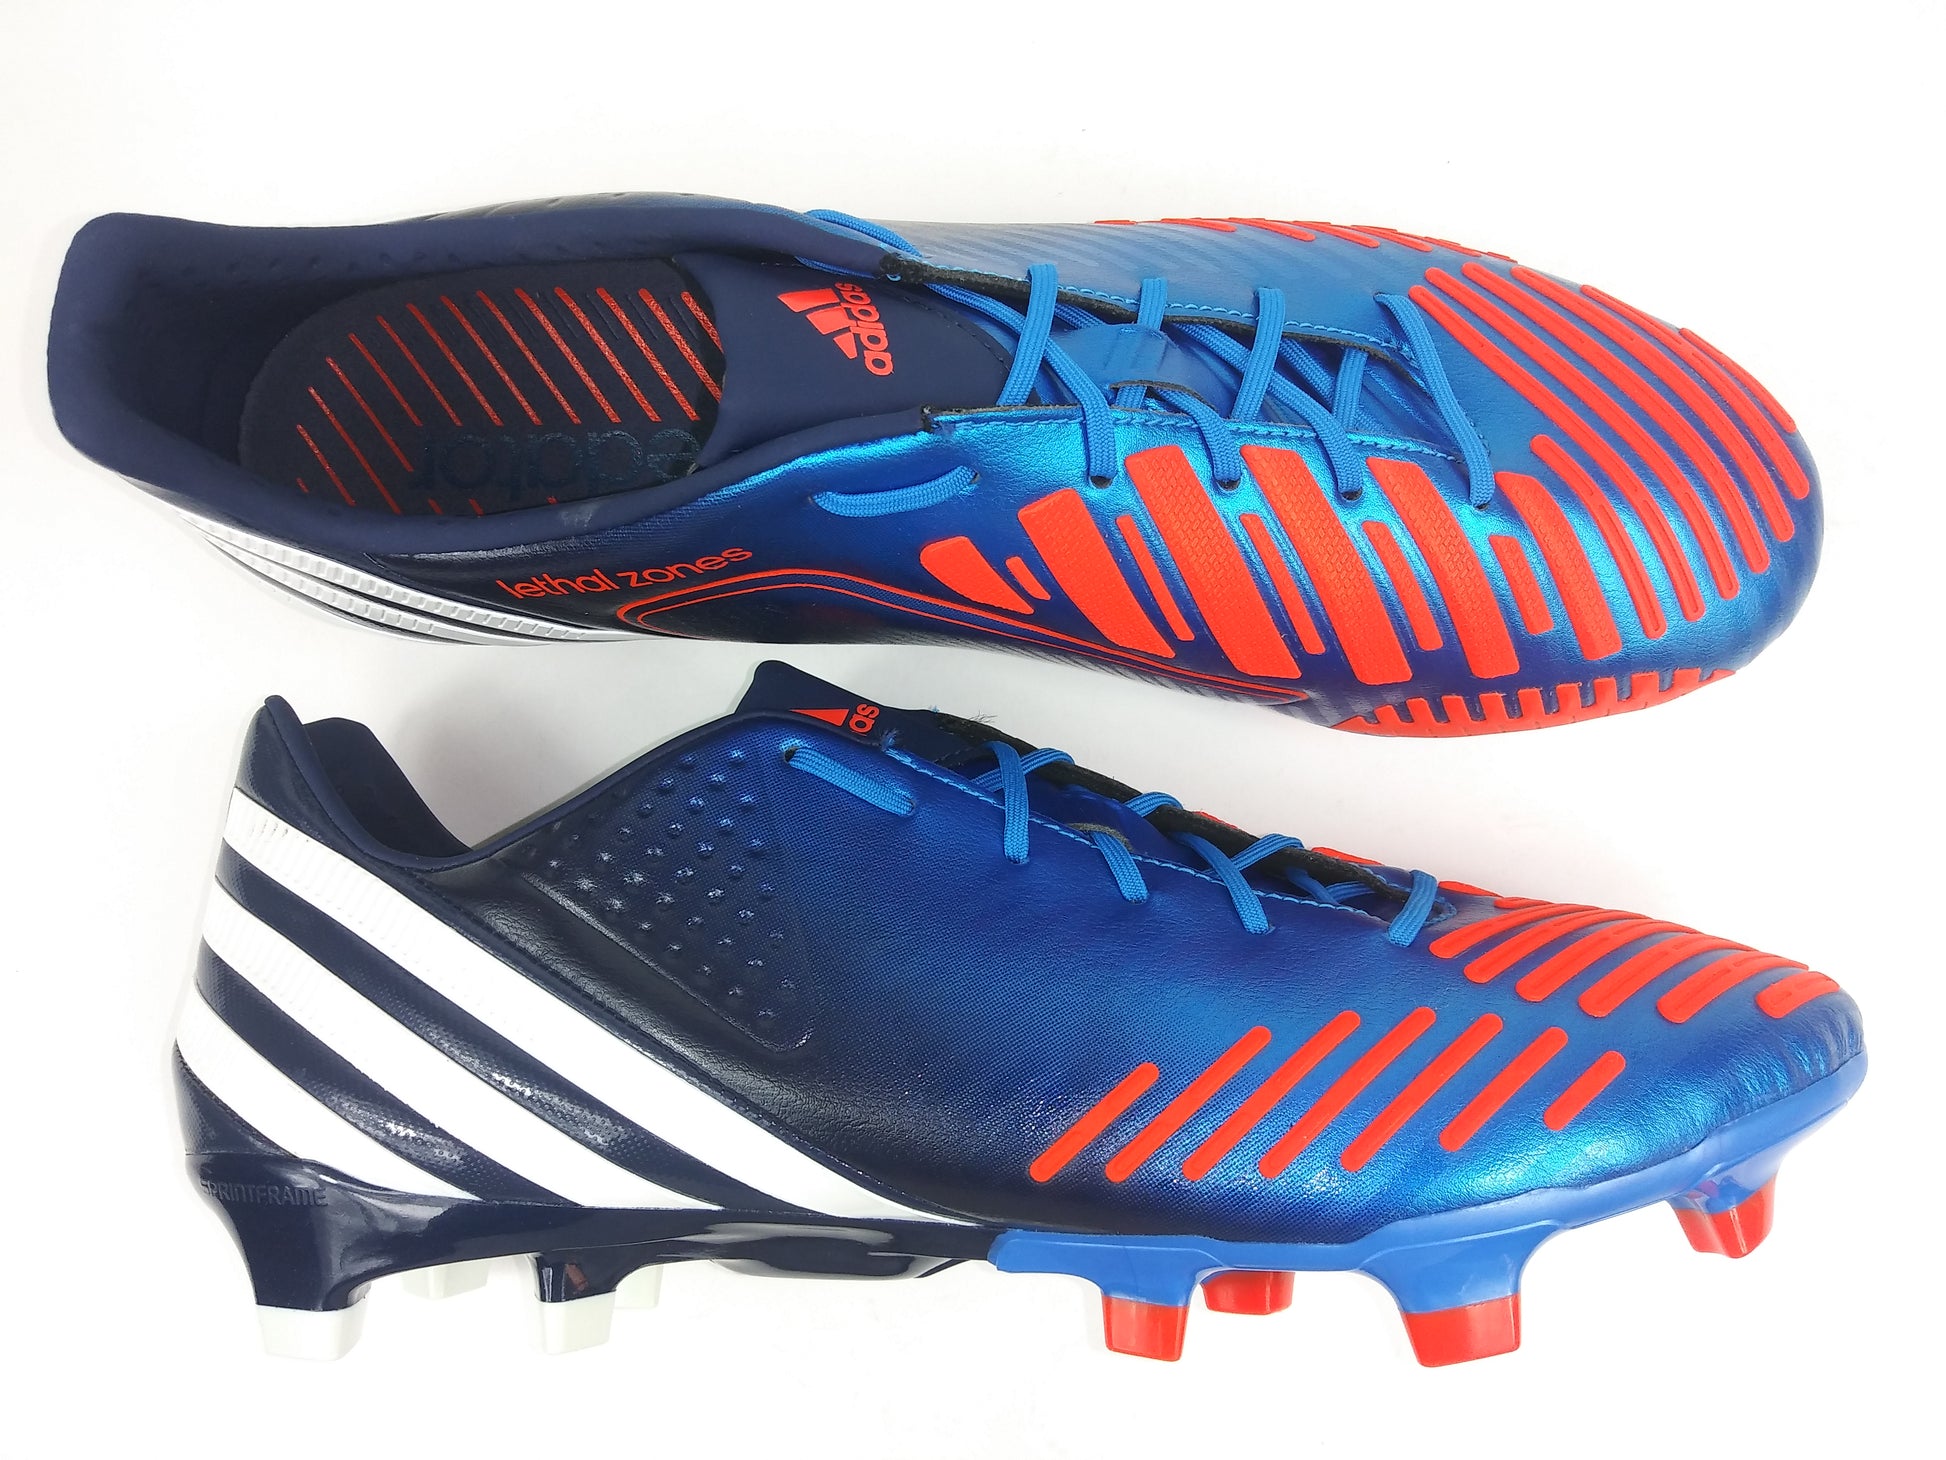 Adidas Predator LZ TRX FG Blue Orange Villegas Footwear